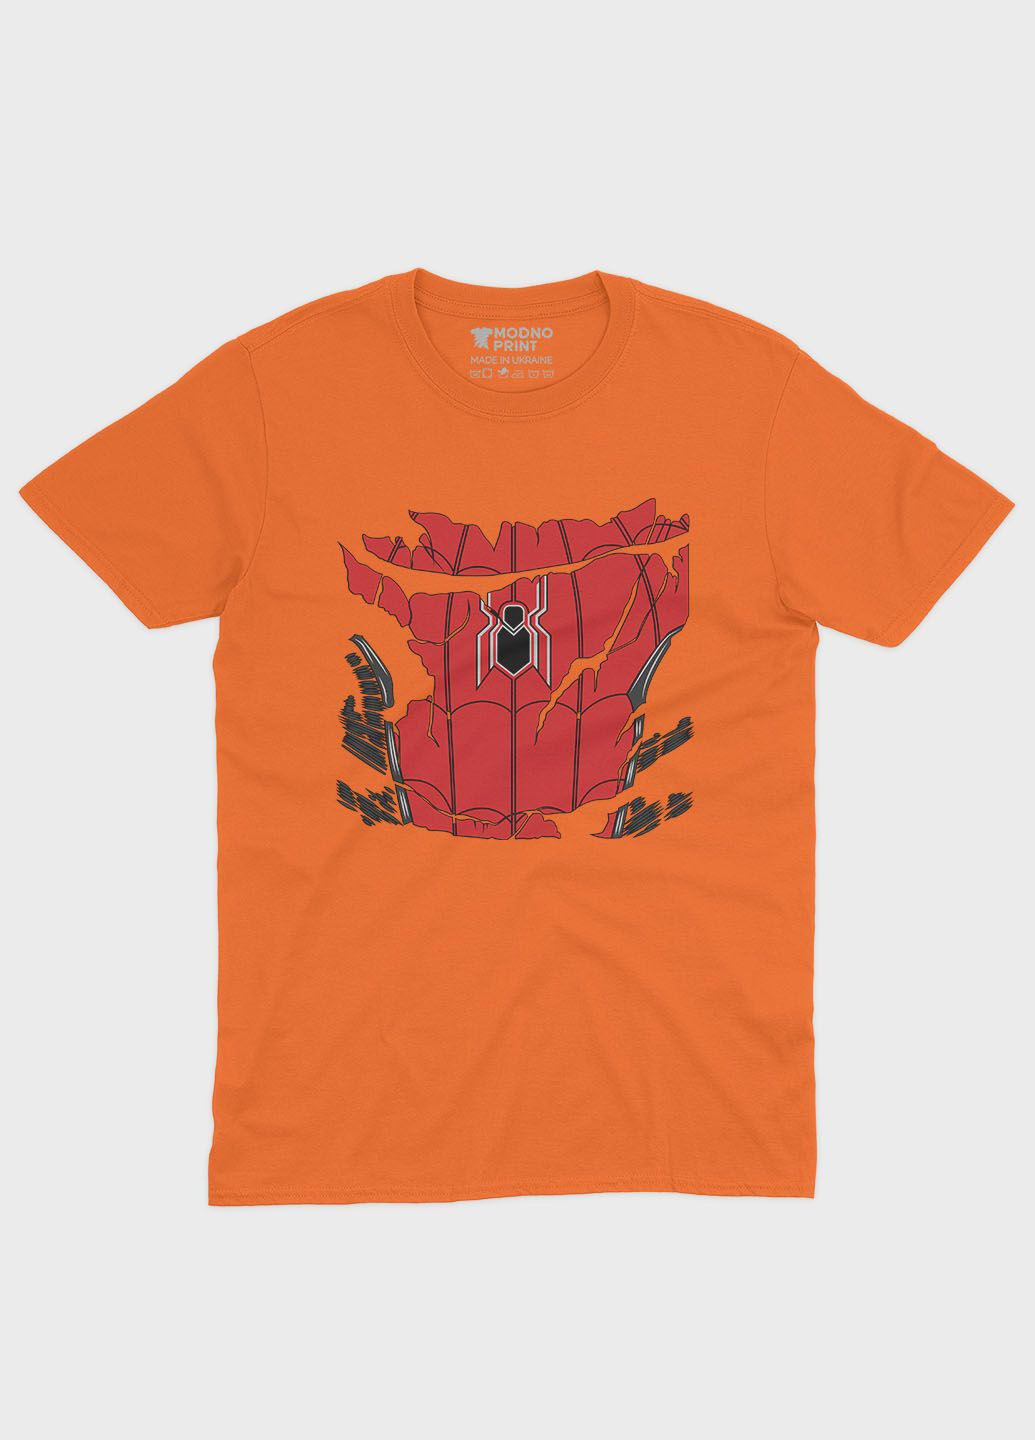 Оранжевая демисезонная футболка для девочки с принтом супергероя - человек-паук (ts001-1-ora-006-014-090-g) Modno